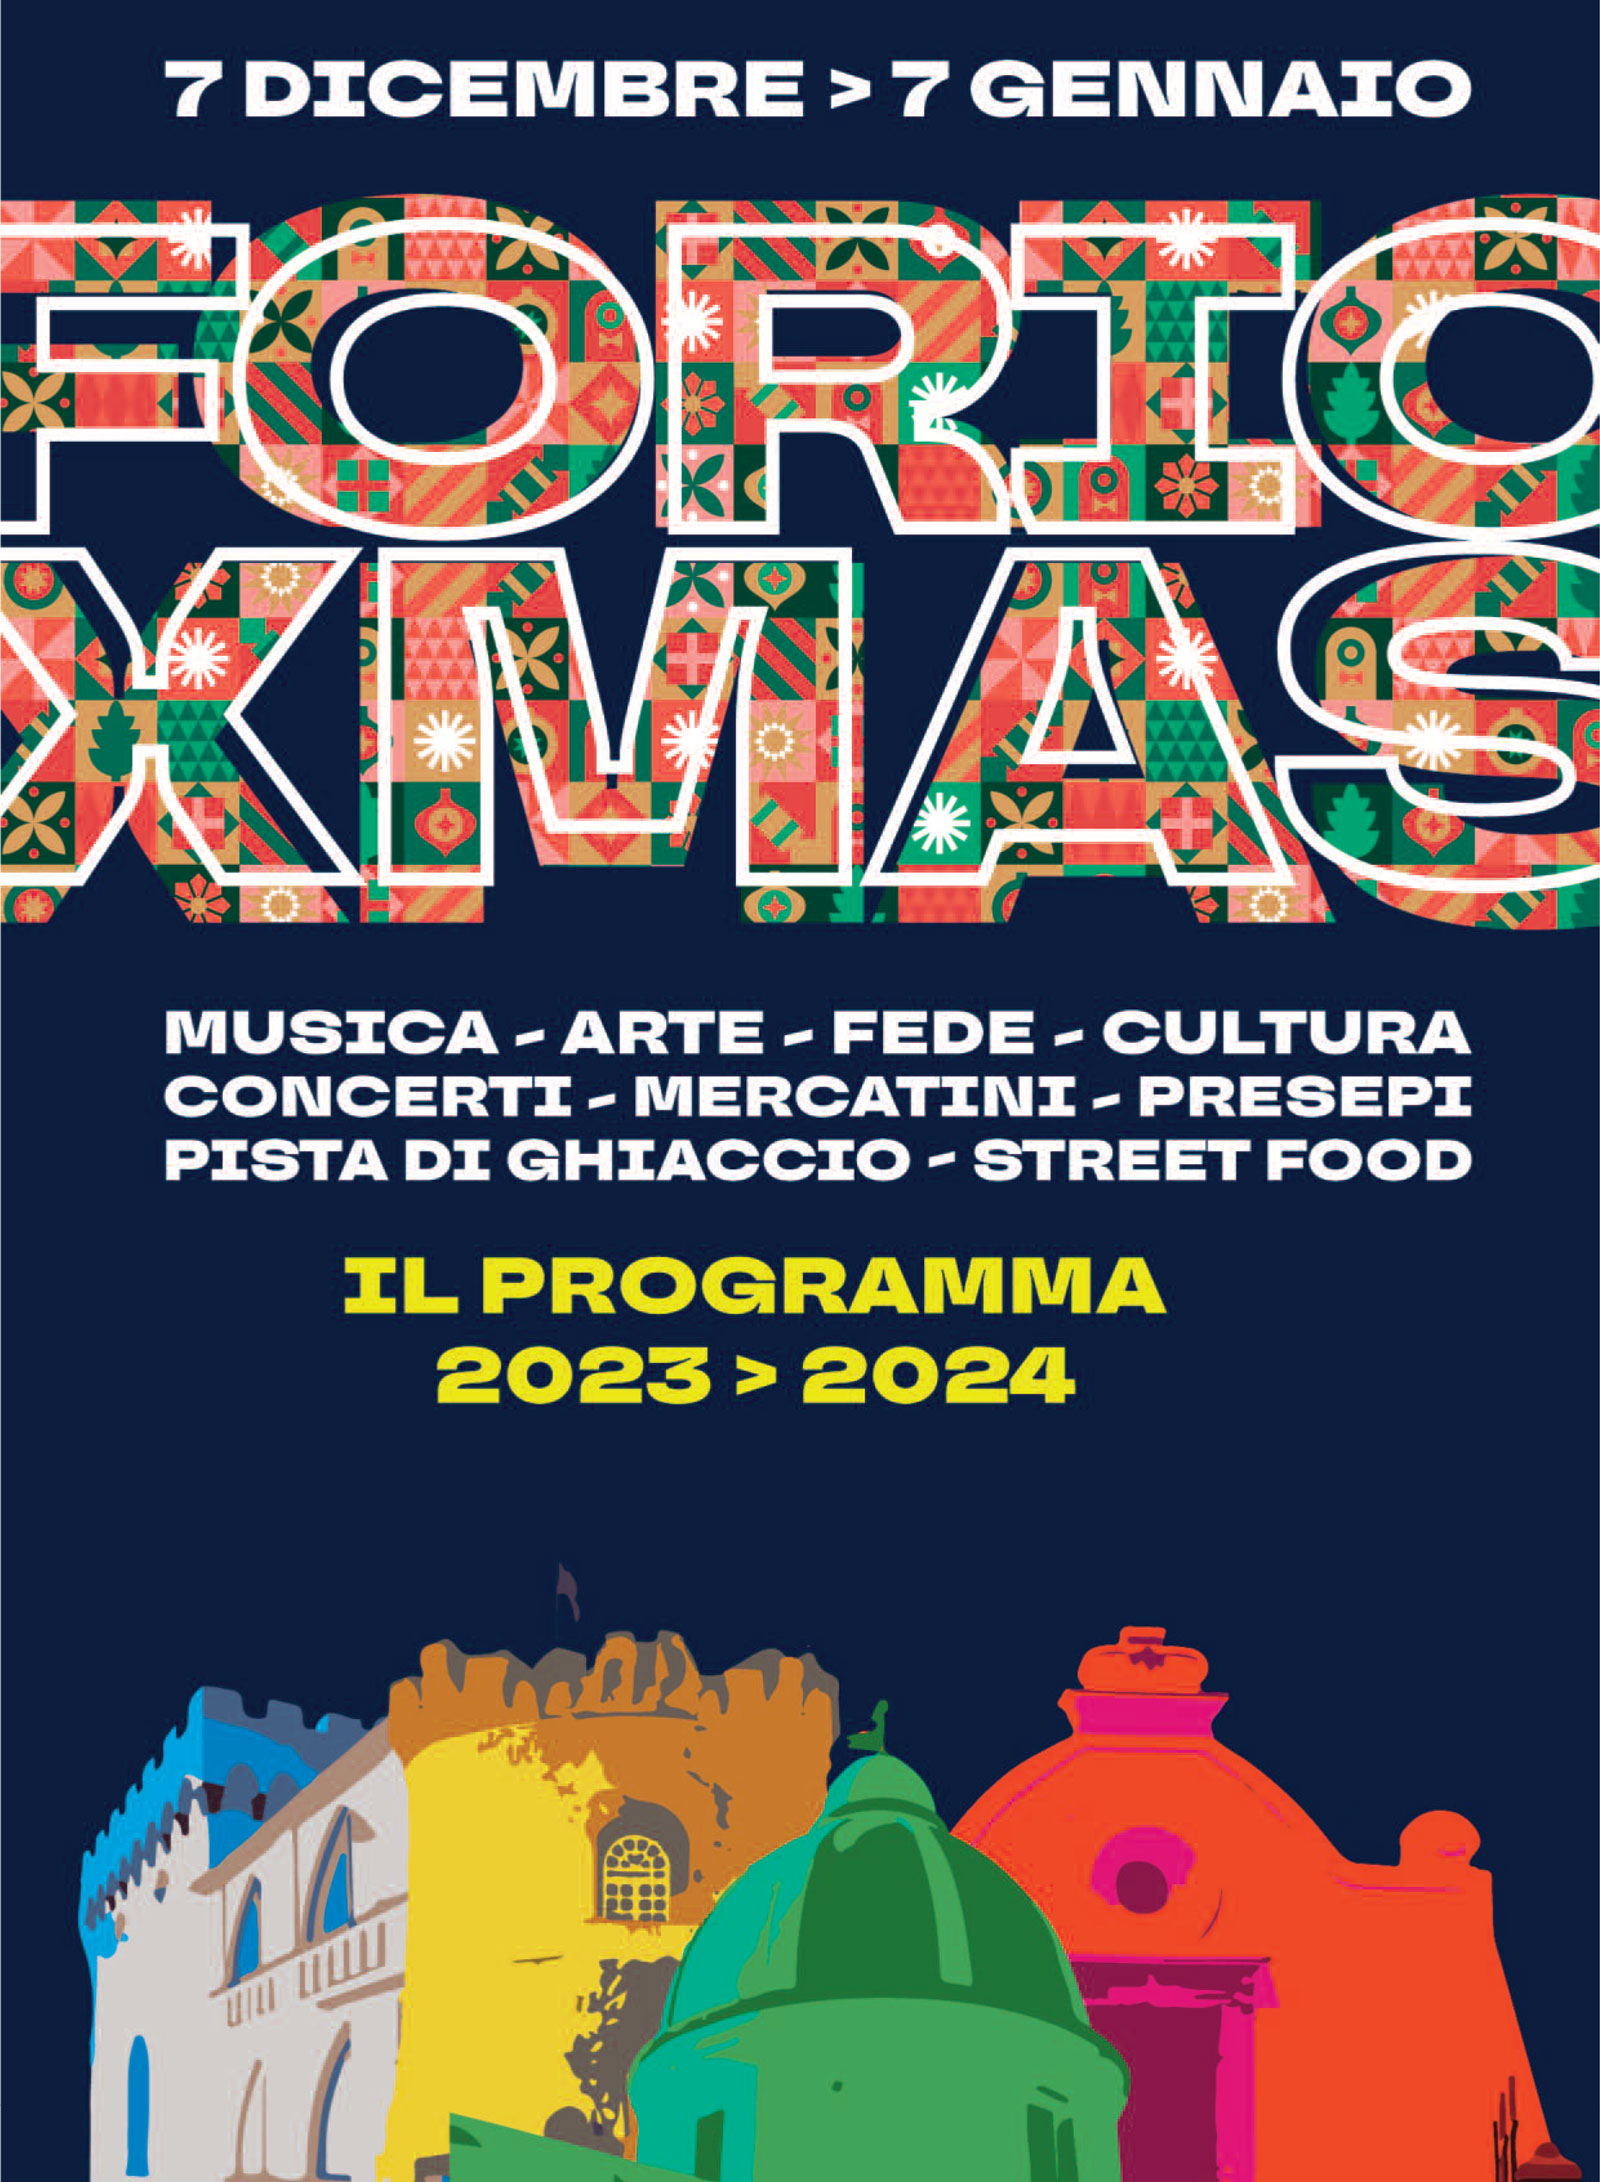 Forio Xmas 2023: Christmas village